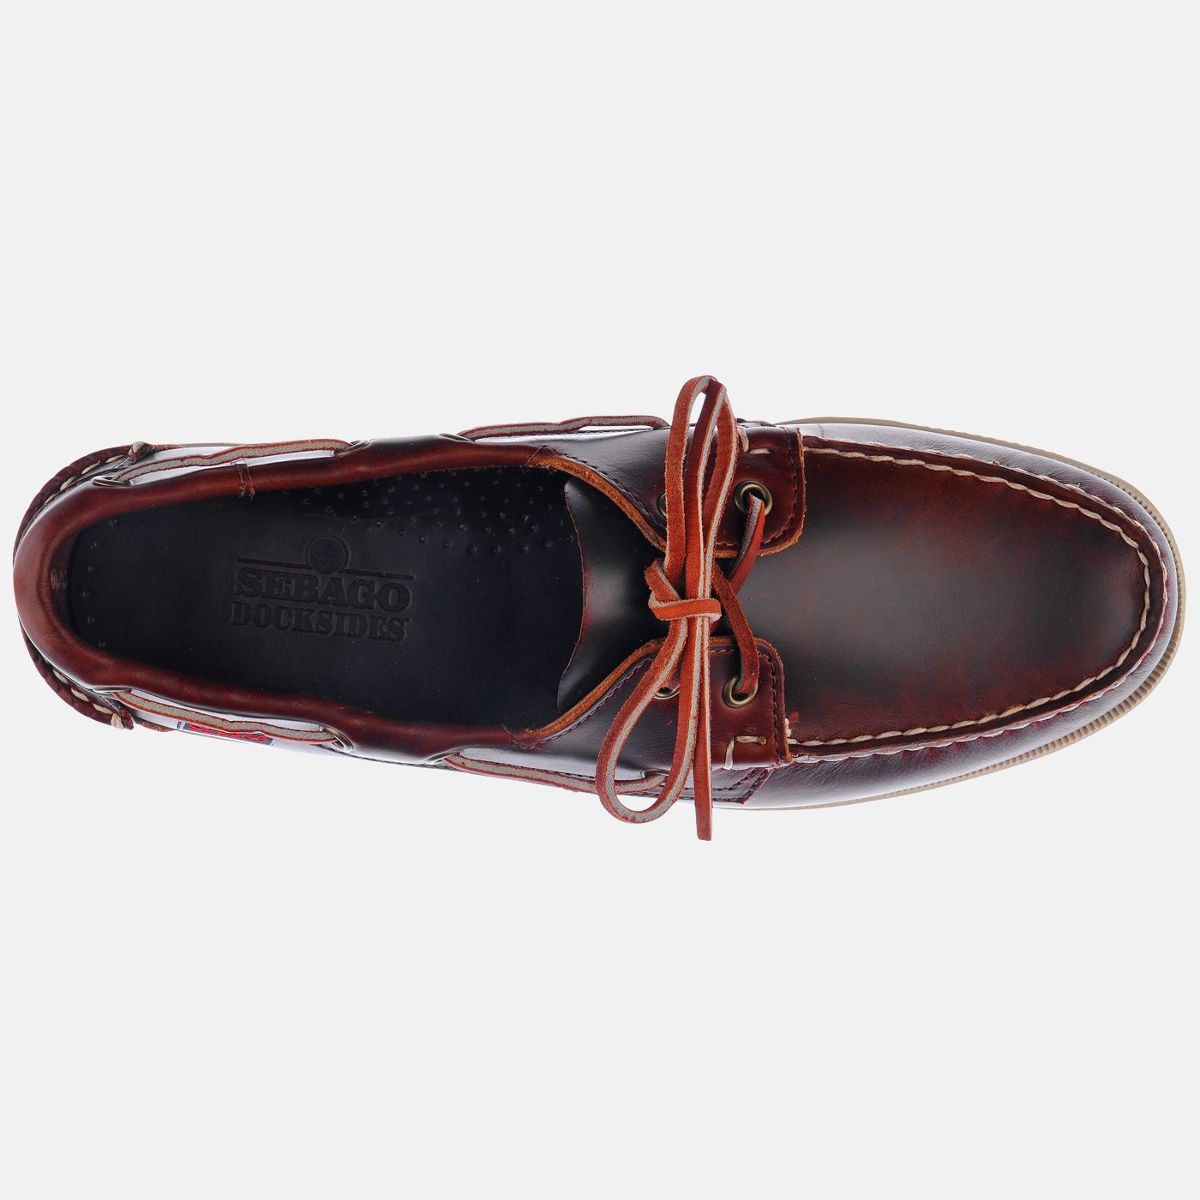 Sebago Docksides bootschoen heren brown oiled waxy leather, maat EU 44 (US 10)